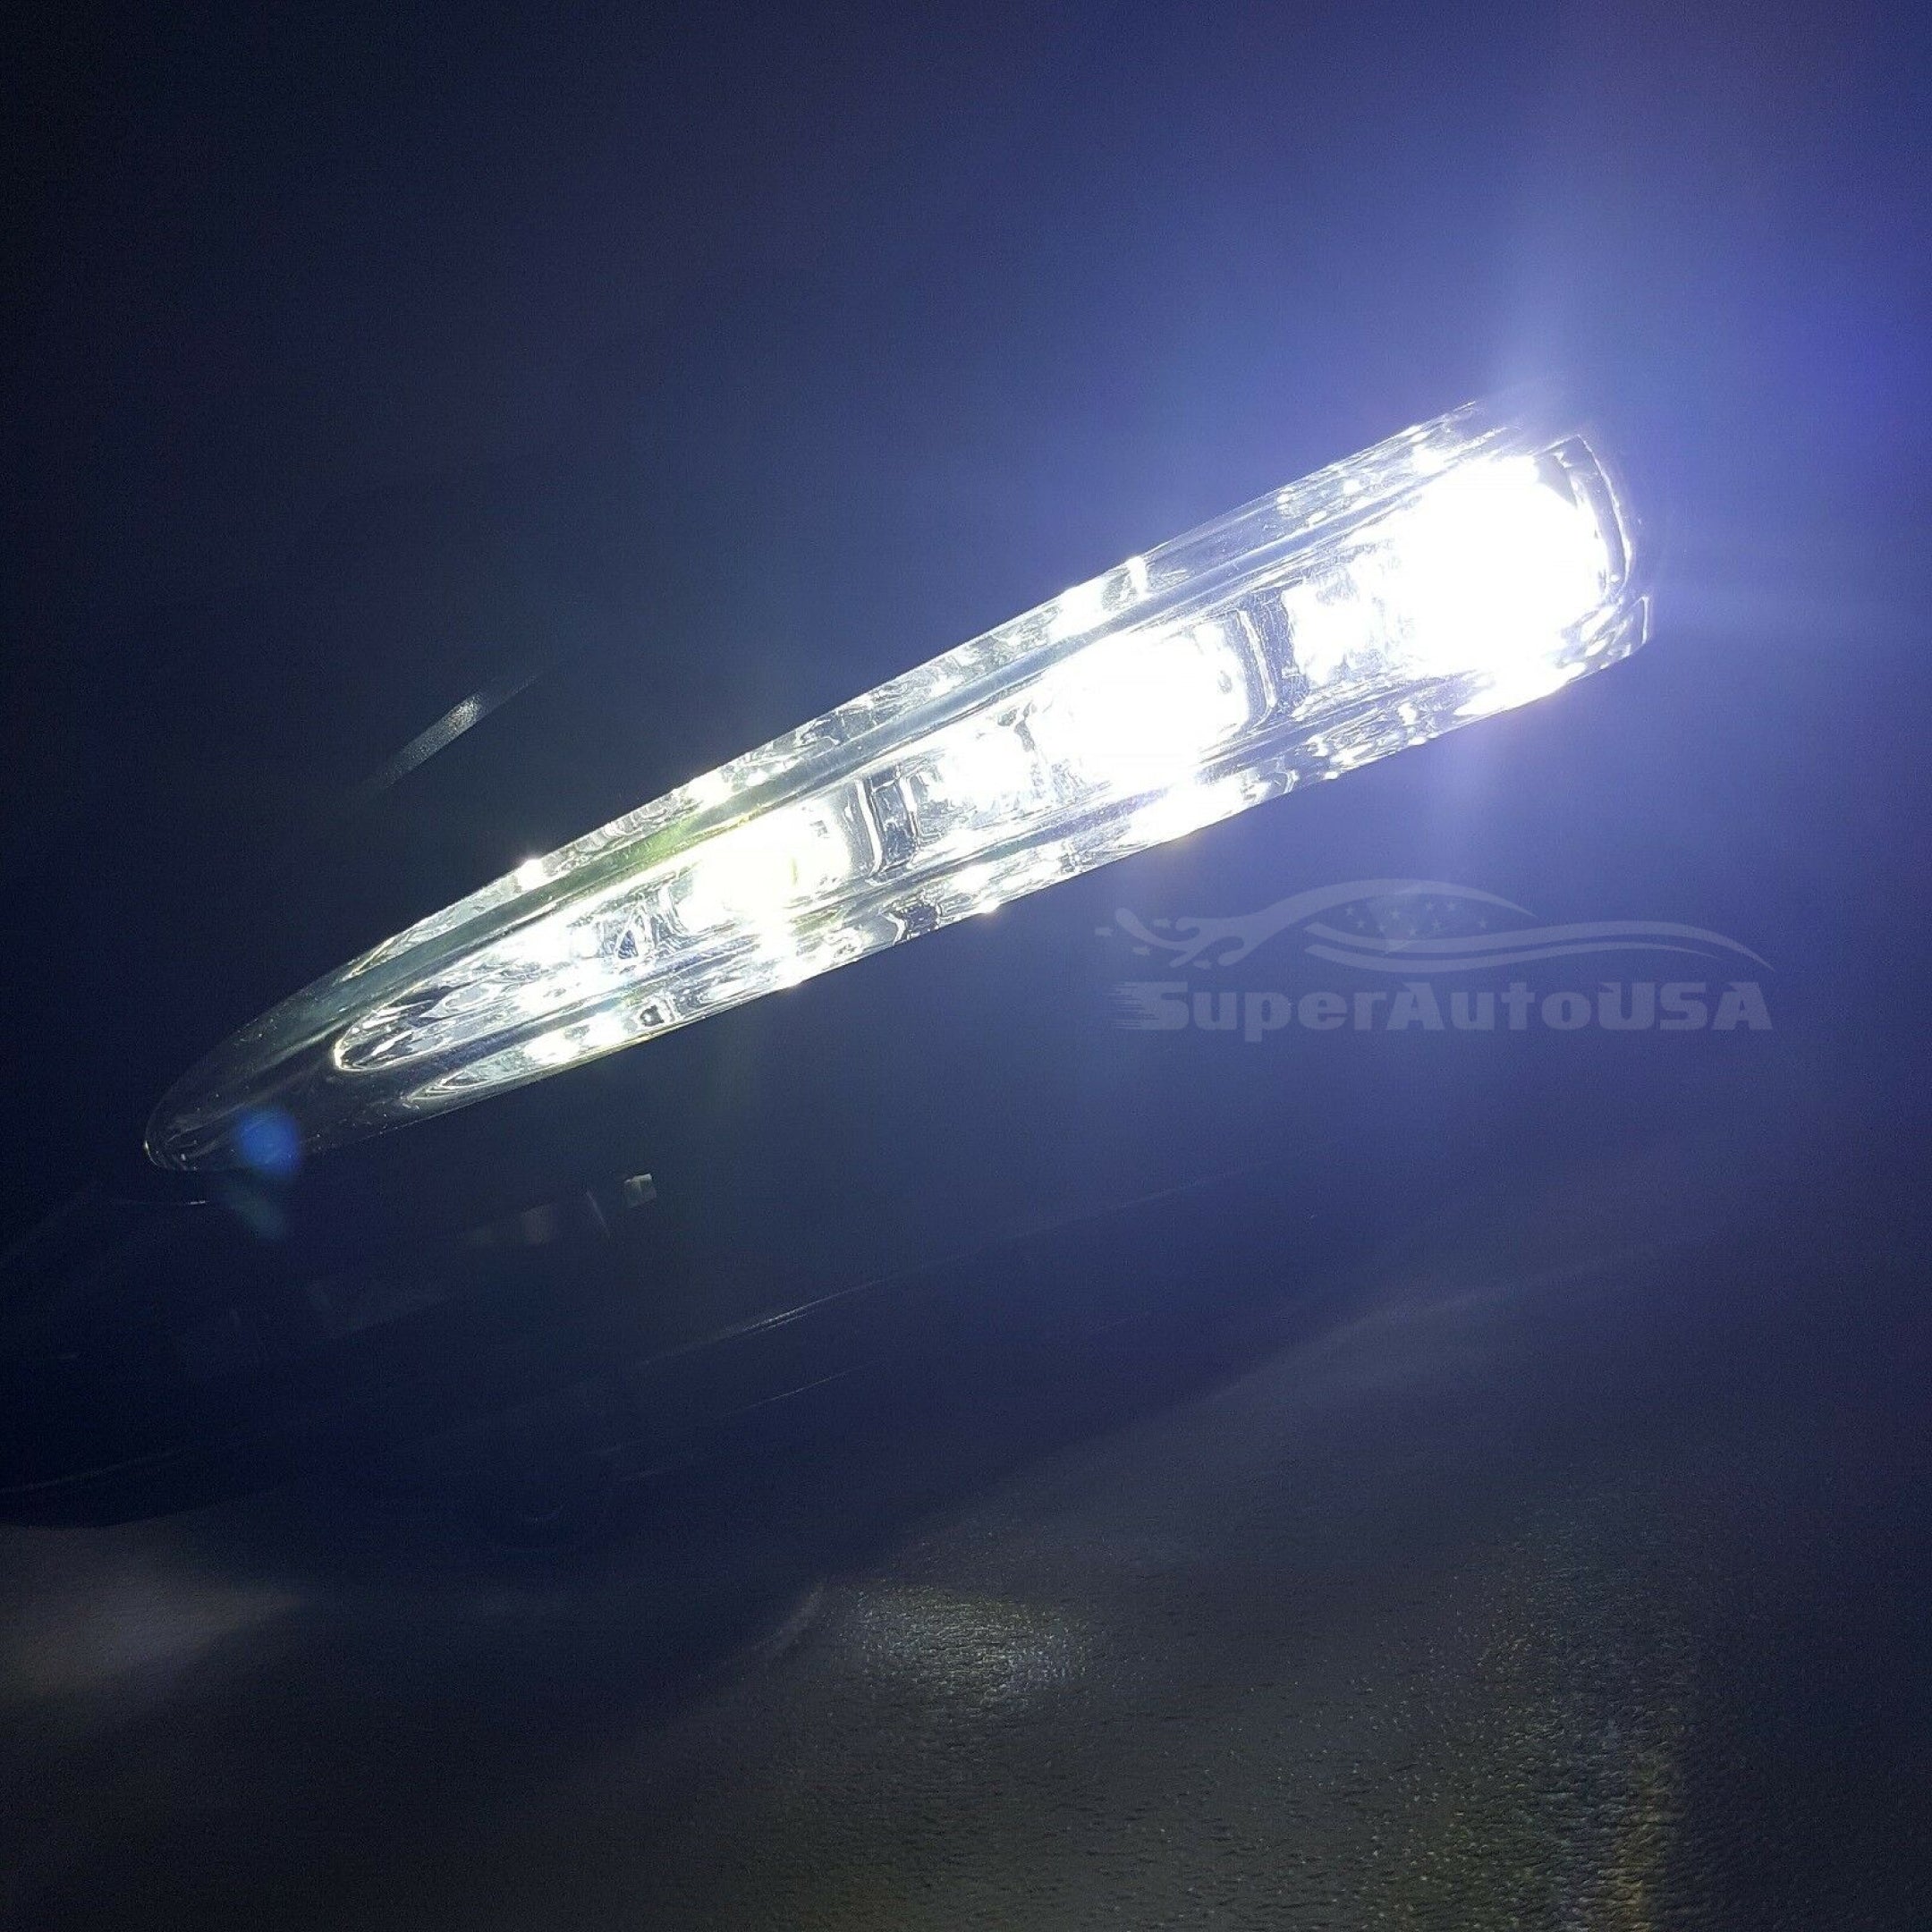 Fog Light - Daytime Running Light | Toyota Corolla L XLE LE (20-24)